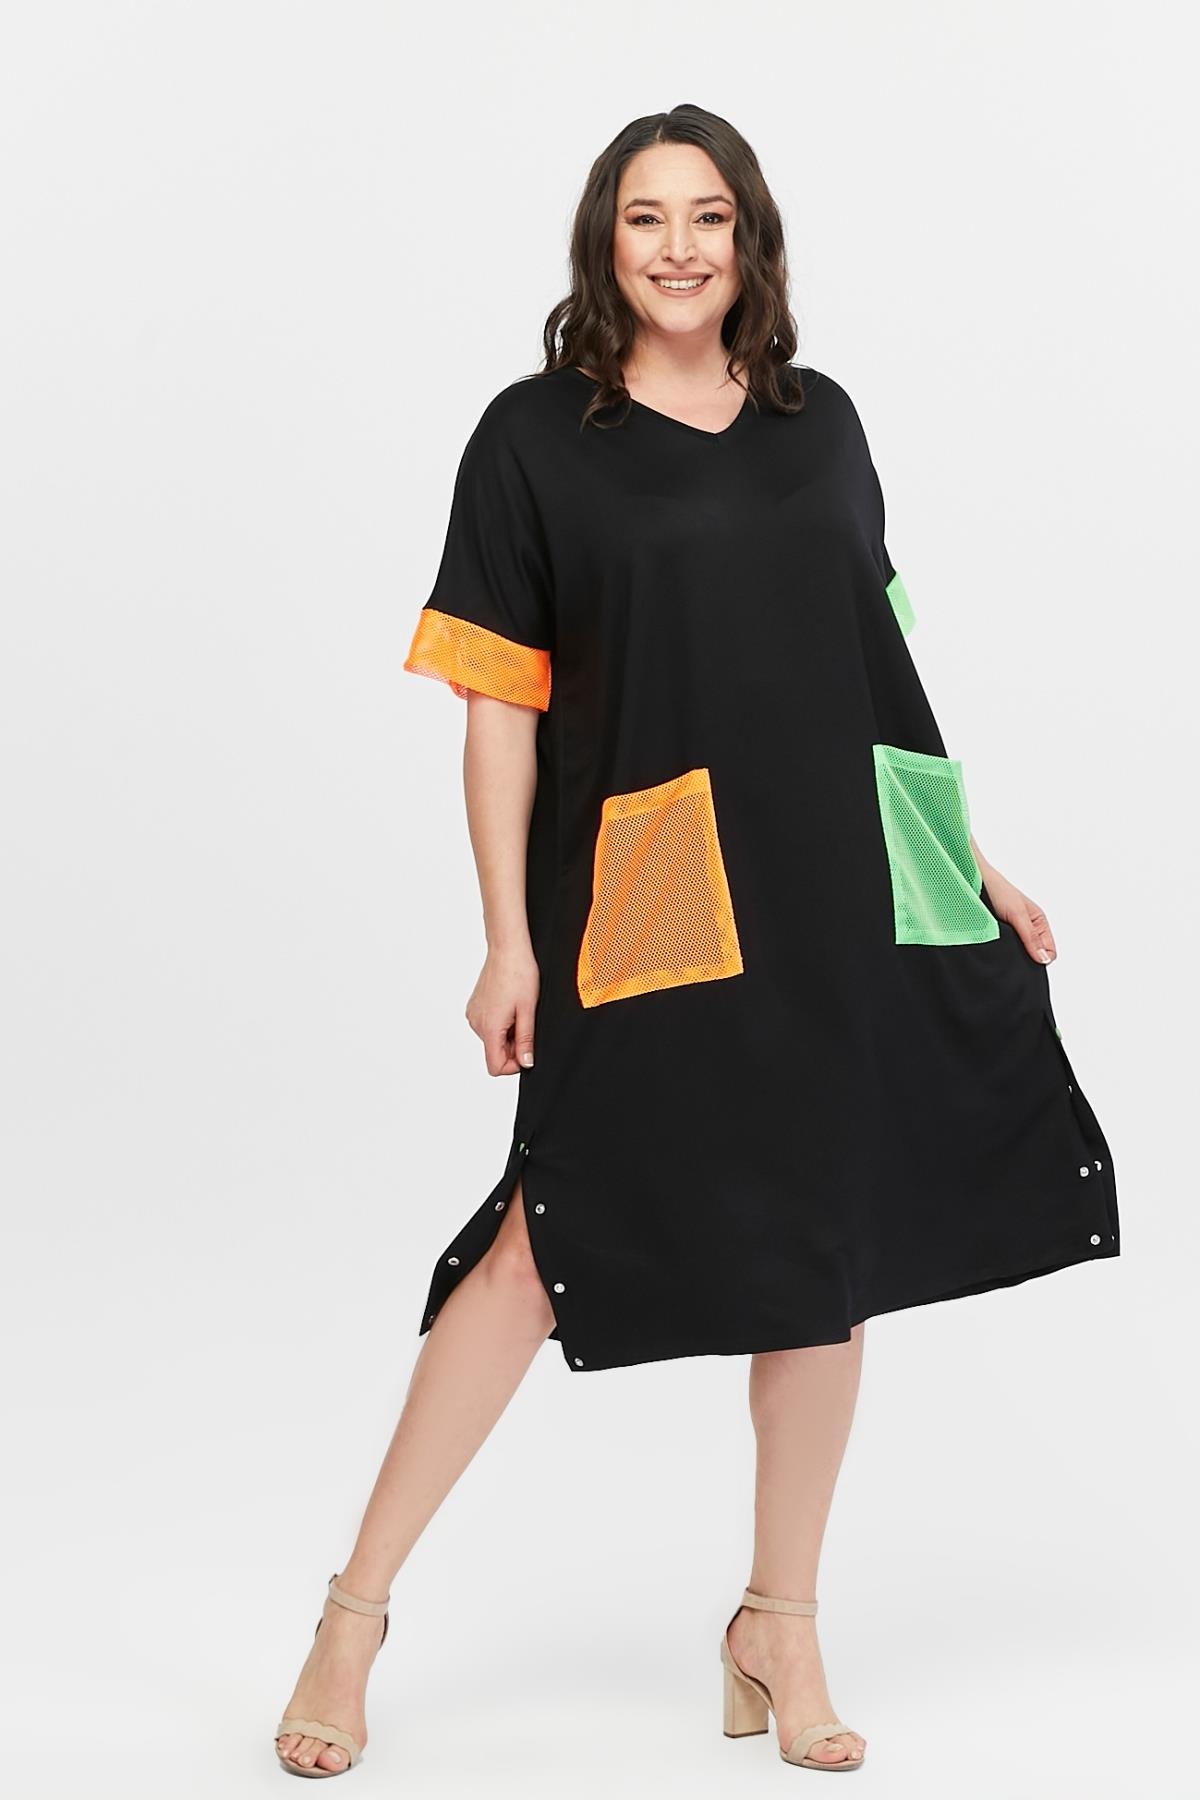 Kadın Büyük Beden Renkli File Cep Detaylı Ekstra Rahat Kalıp Elbise